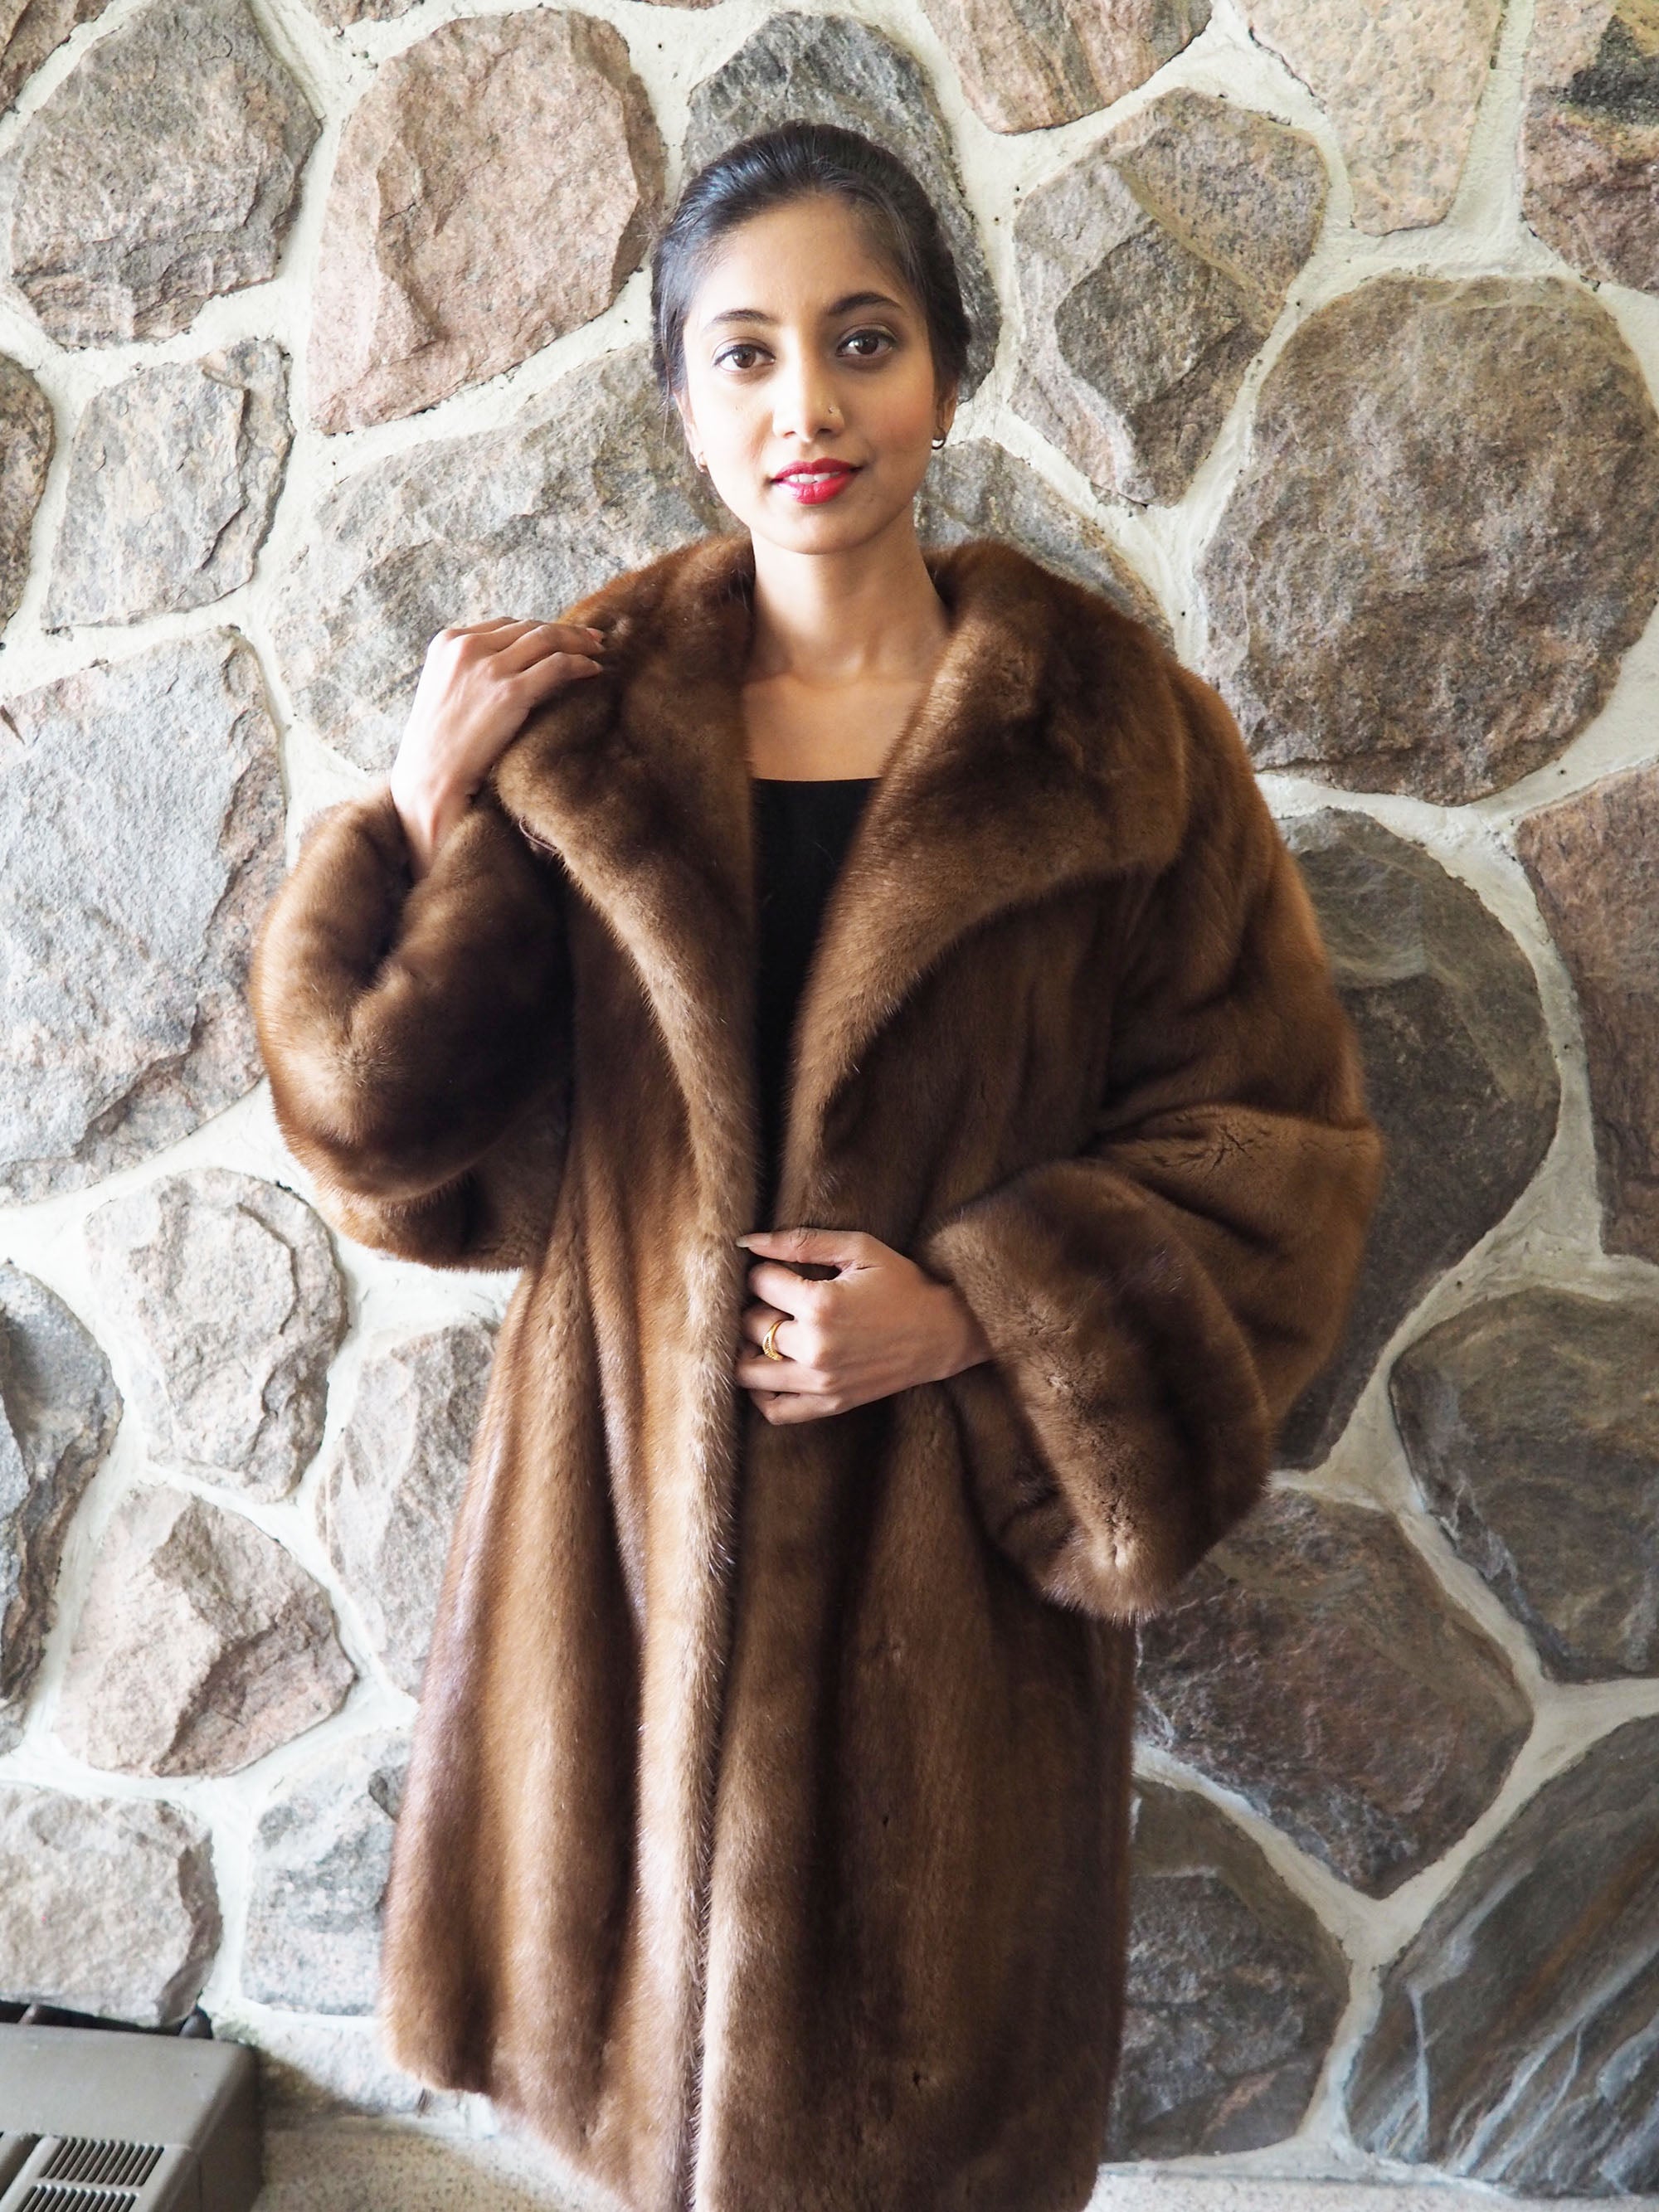 Demi Buff Lunarain Mink Fur Jacket Coat L/X (16)